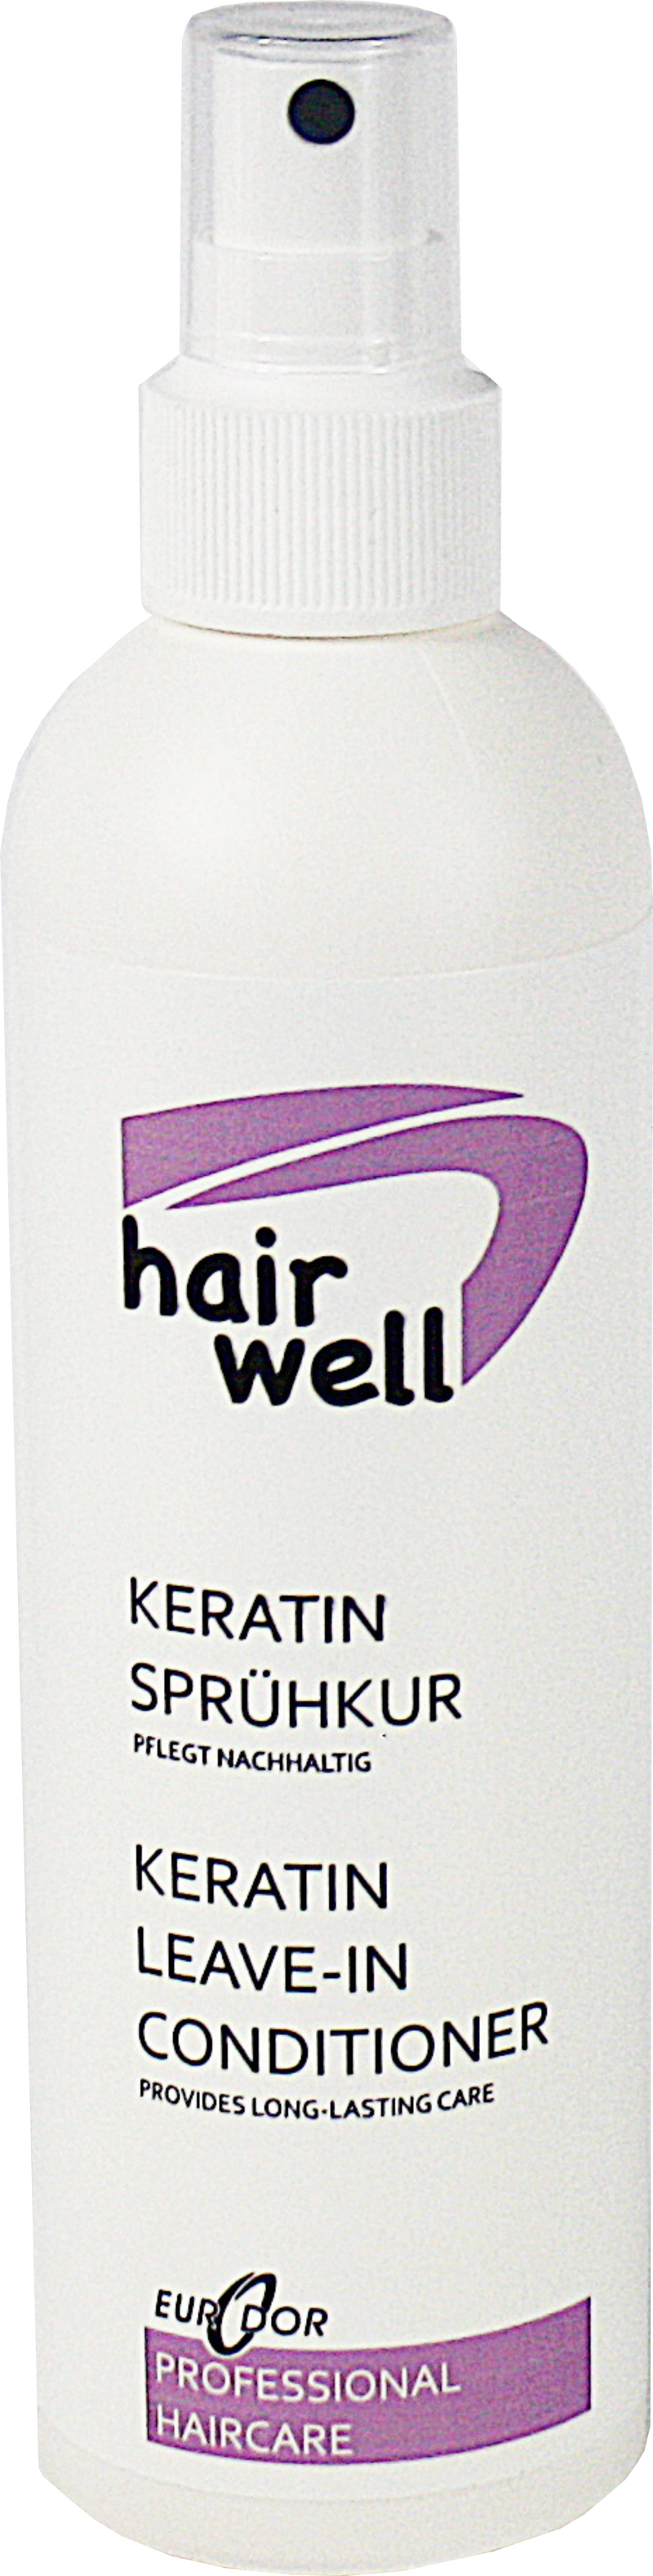 Hairwell Keratin Sprühkur